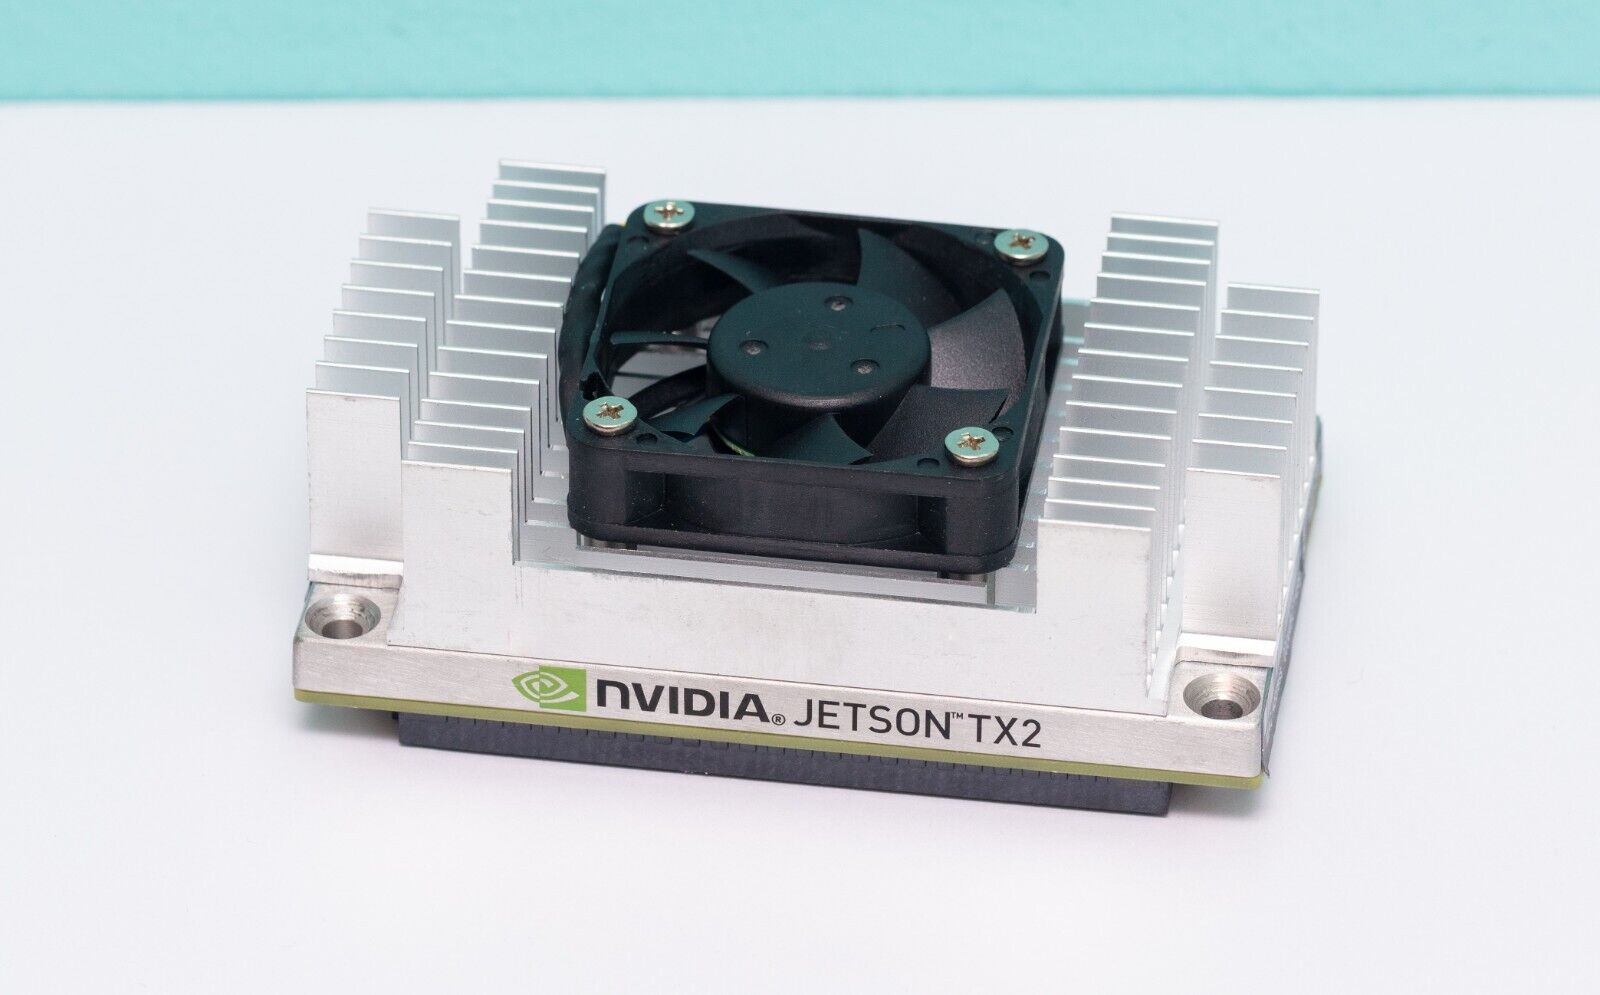 Nvidia Jetson TX2 Module P3310 8GB RAM 135-0807-001 R2 with Heatsink Fan